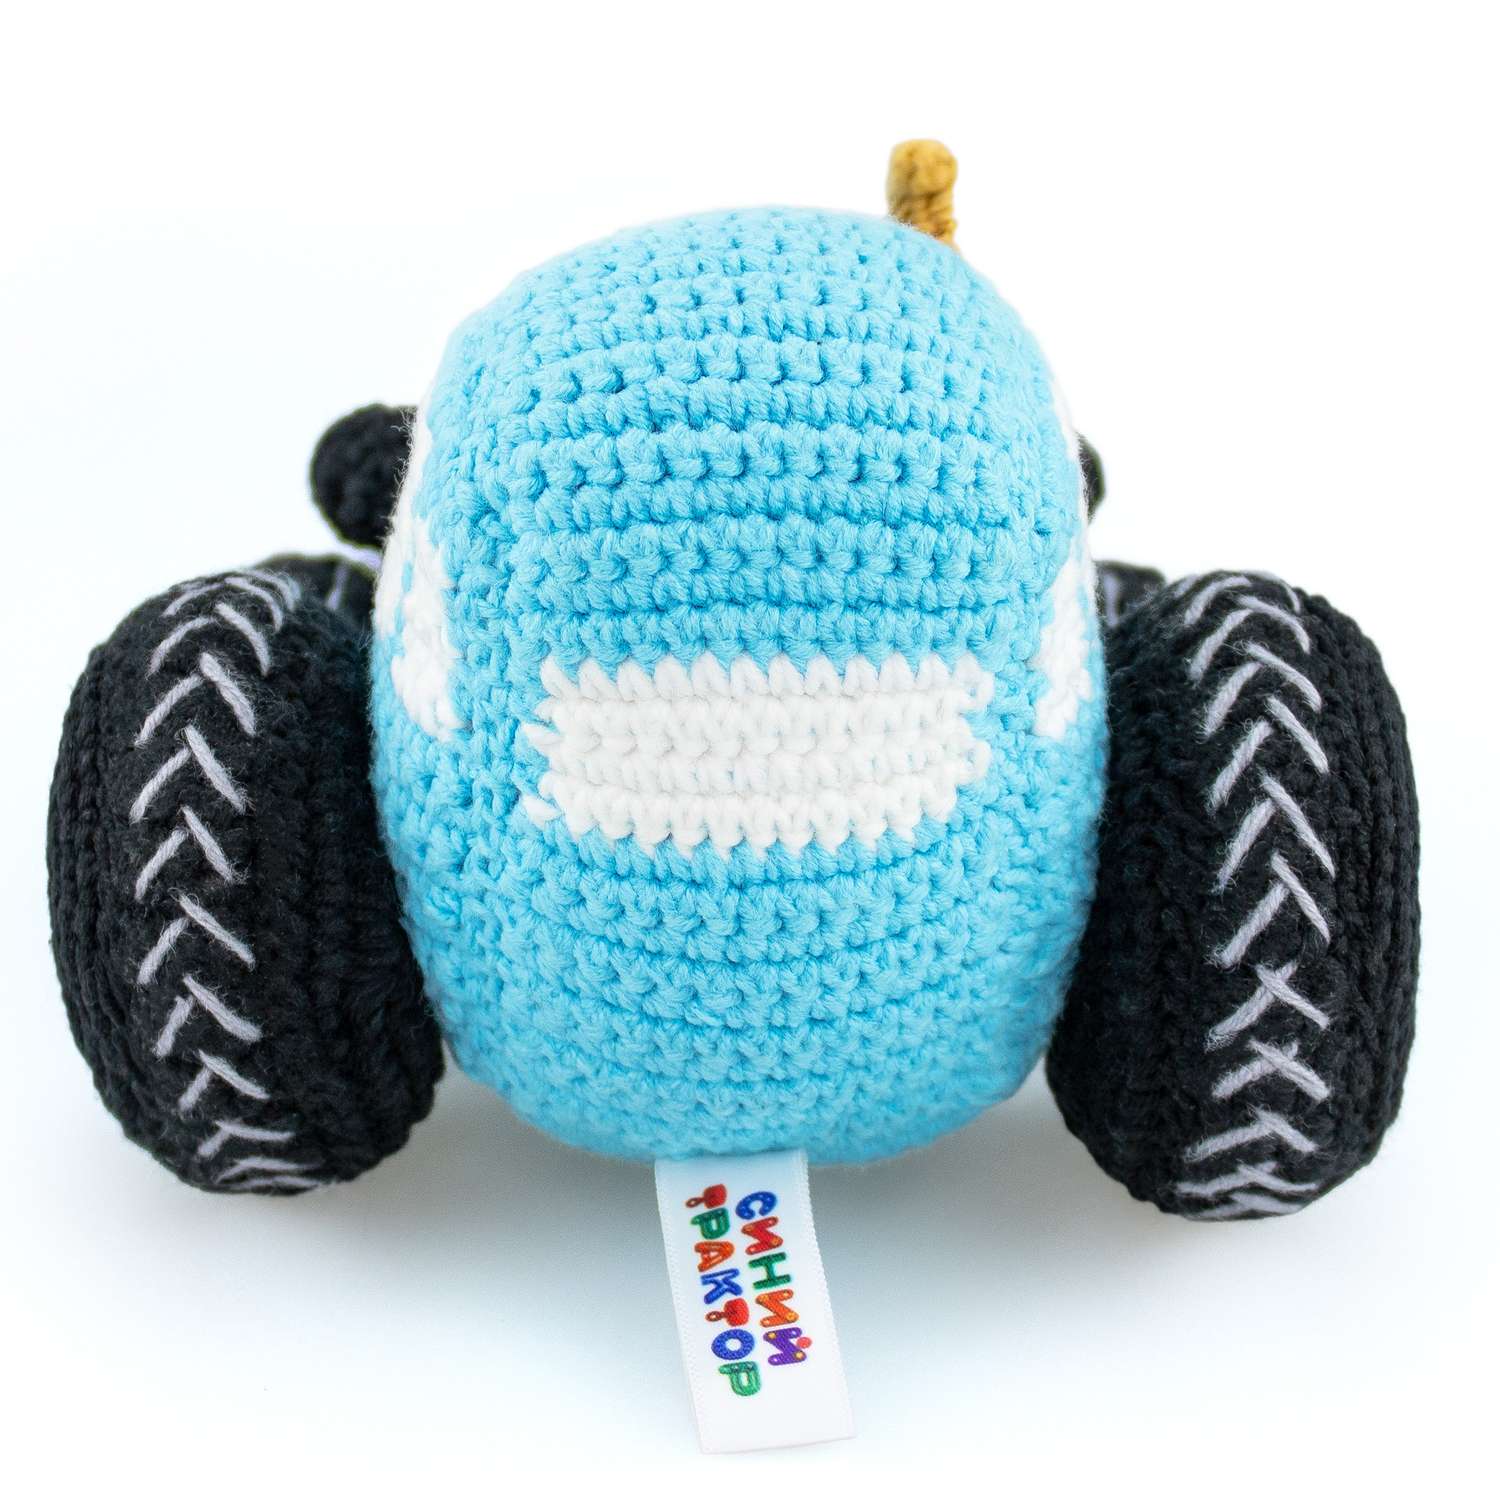 Мягкая игрушка Синий трактор вязаная игрушка Синий Трактор - фото 4